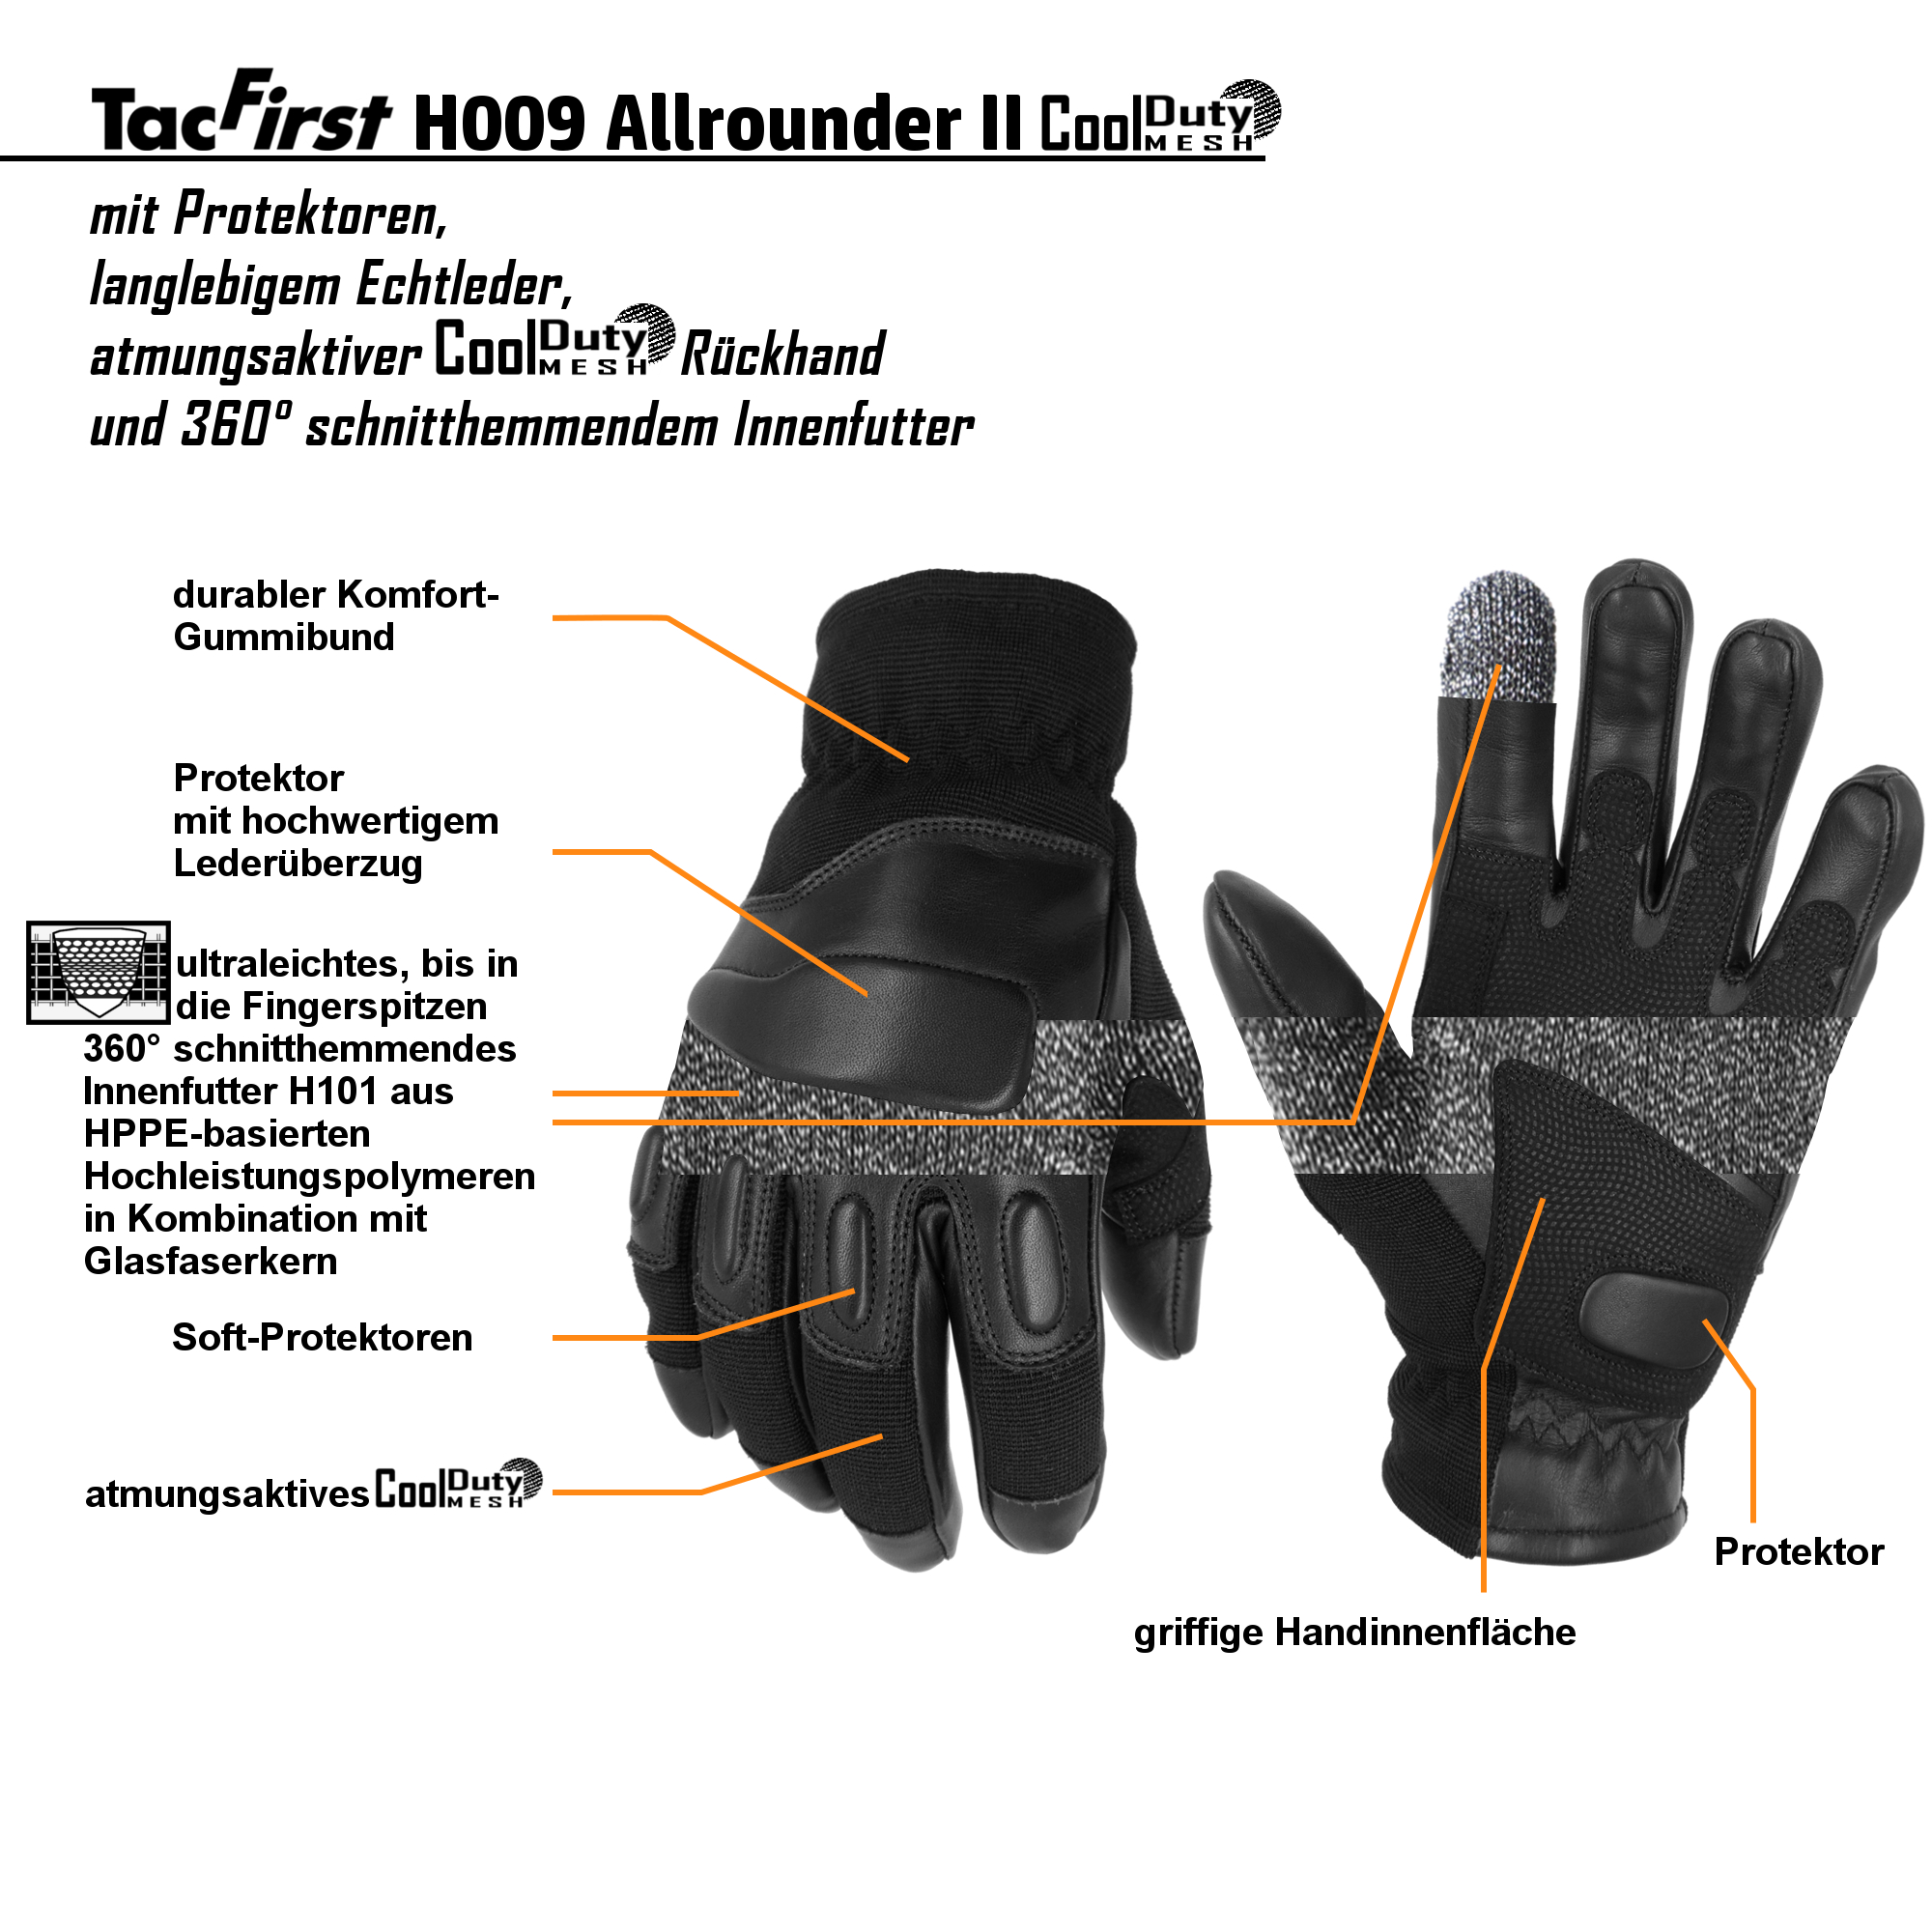 TacFirst® Einsatzhandschuhe H009 Allrounder II CoolDuty, 360° schnitthemmend und atmungsaktiv